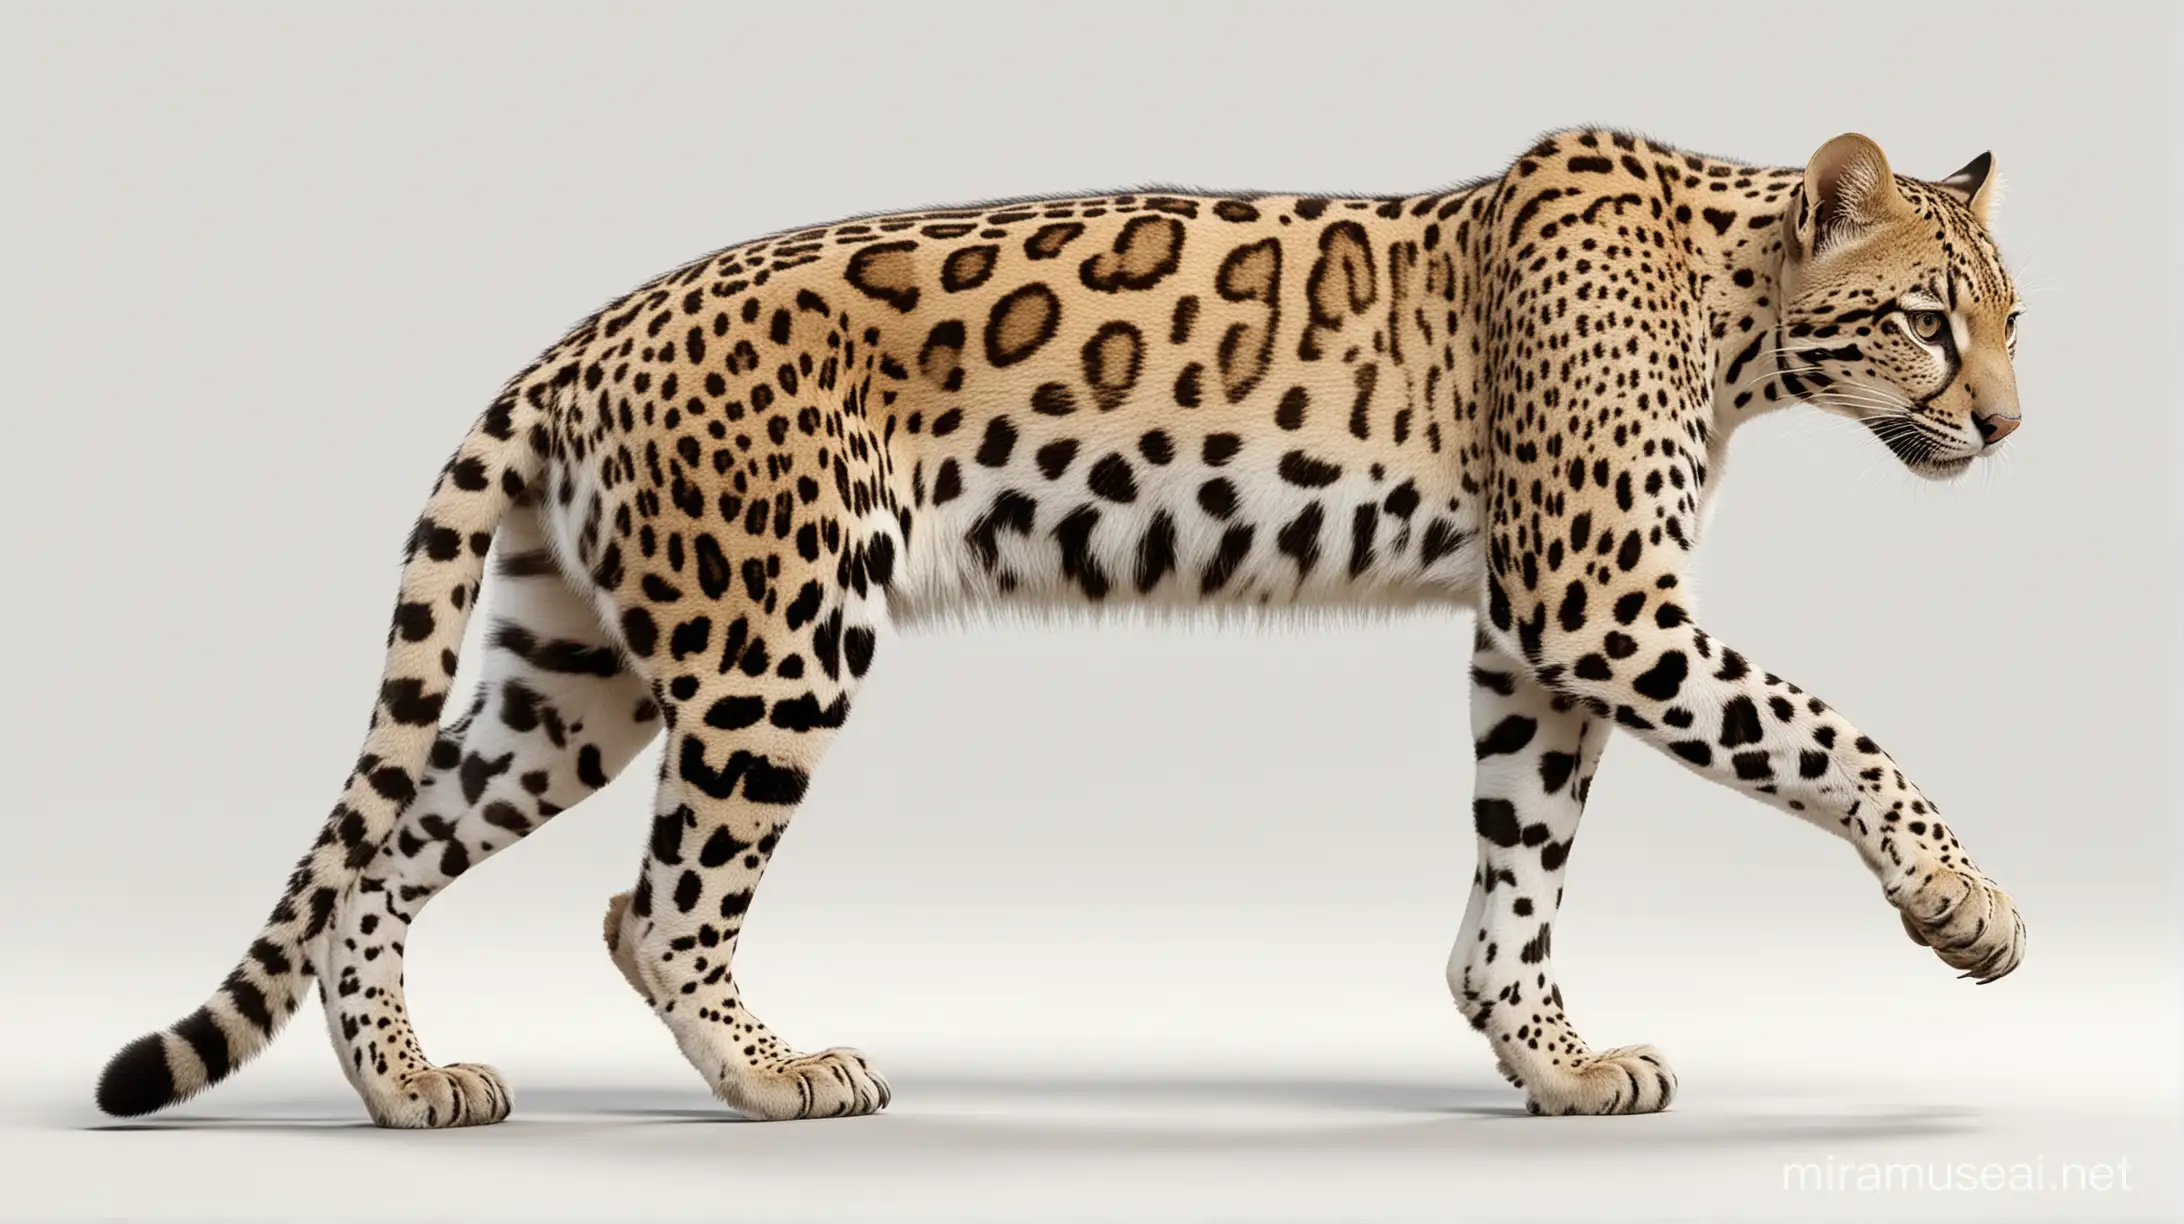 Imagen digital vectorizada 3D de ocelote leopardus pardalis caminado en cuatro patas. Fondo blanco
